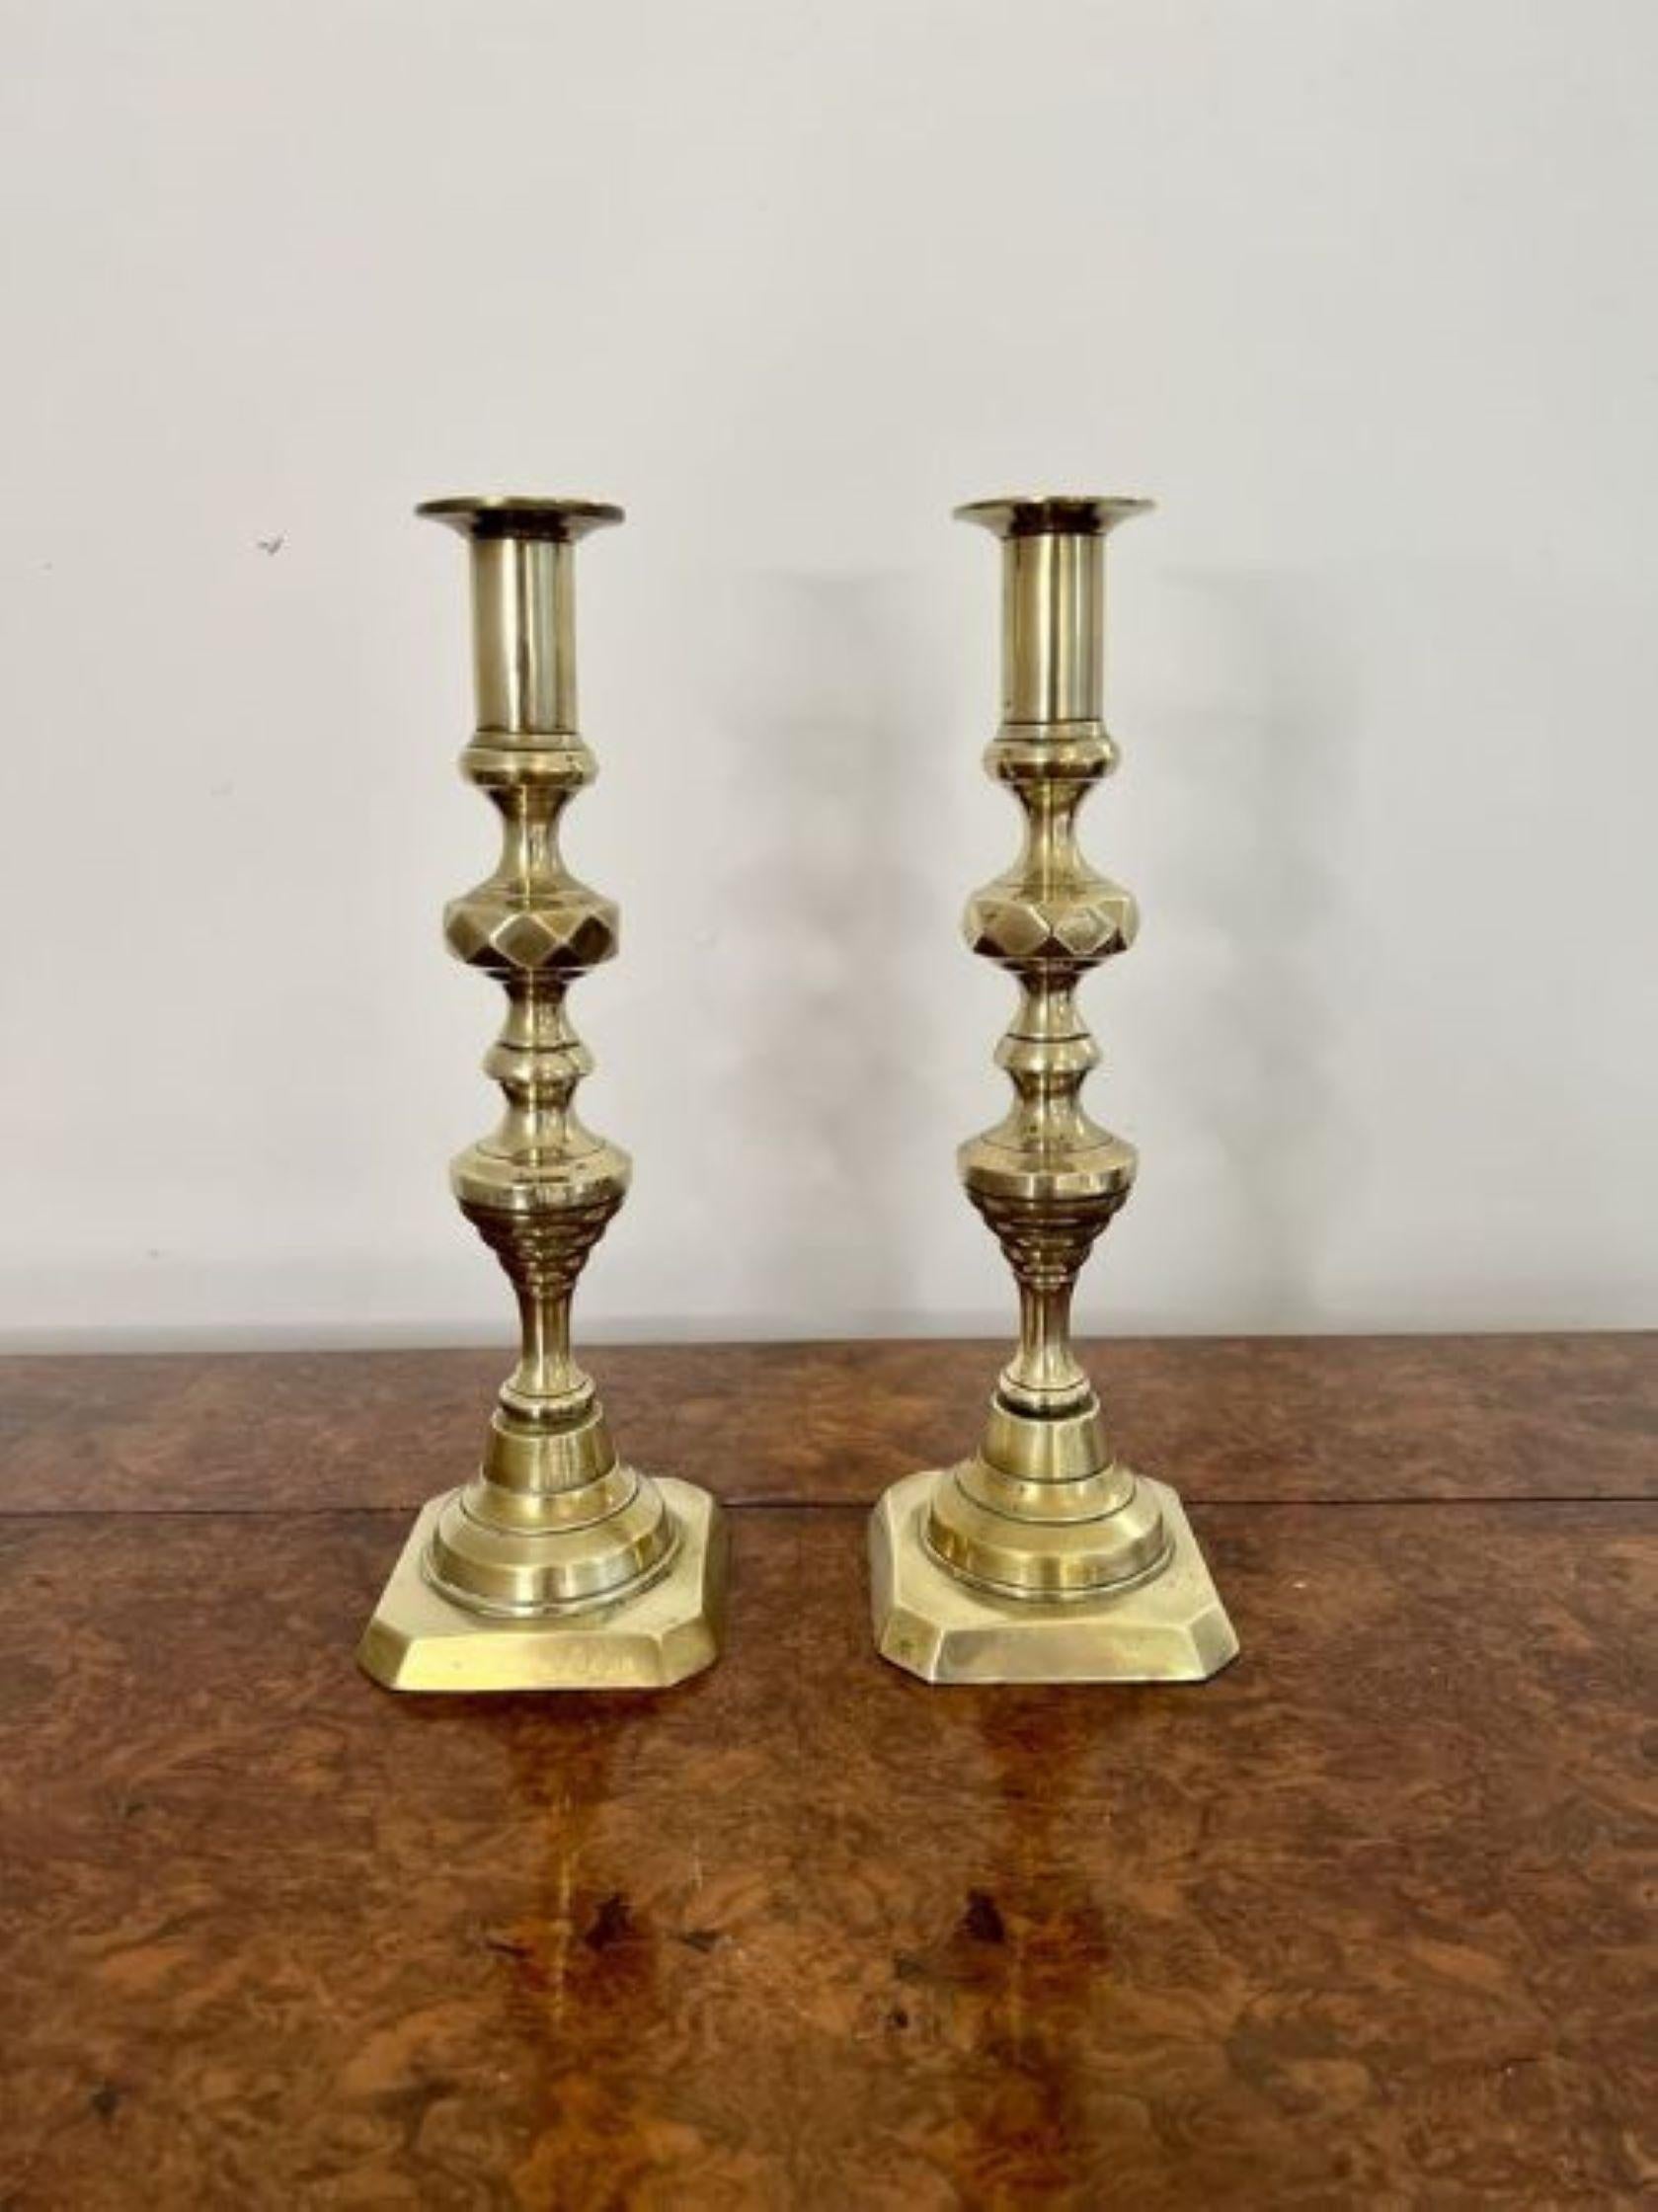 Paar antiker viktorianischer Qualitätsmessing-Kerzenständer mit einem Paar viktorianischer Qualitätsmessing-Kerzenständer mit gedrehten, geformten Säulen auf einem abgestuften Sockel.